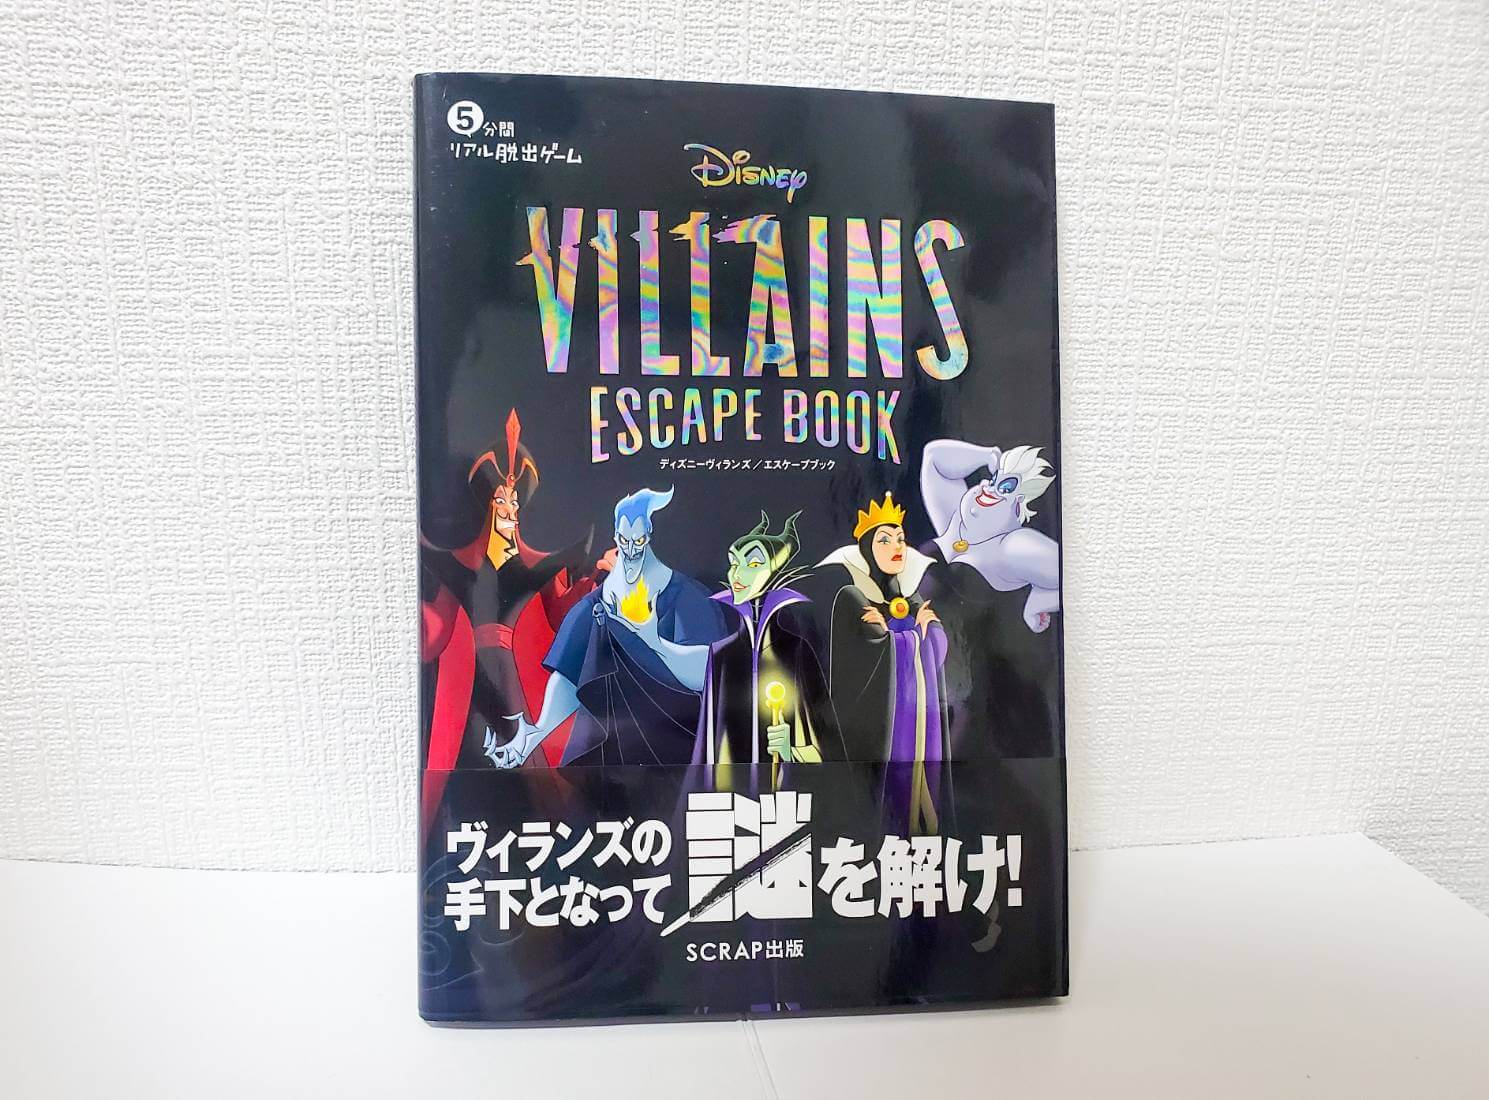 5分間リアル脱出ゲーム『VILLAINS Escape Book』を遊んだ感想!ヴィランズの手下になって謎解き!!